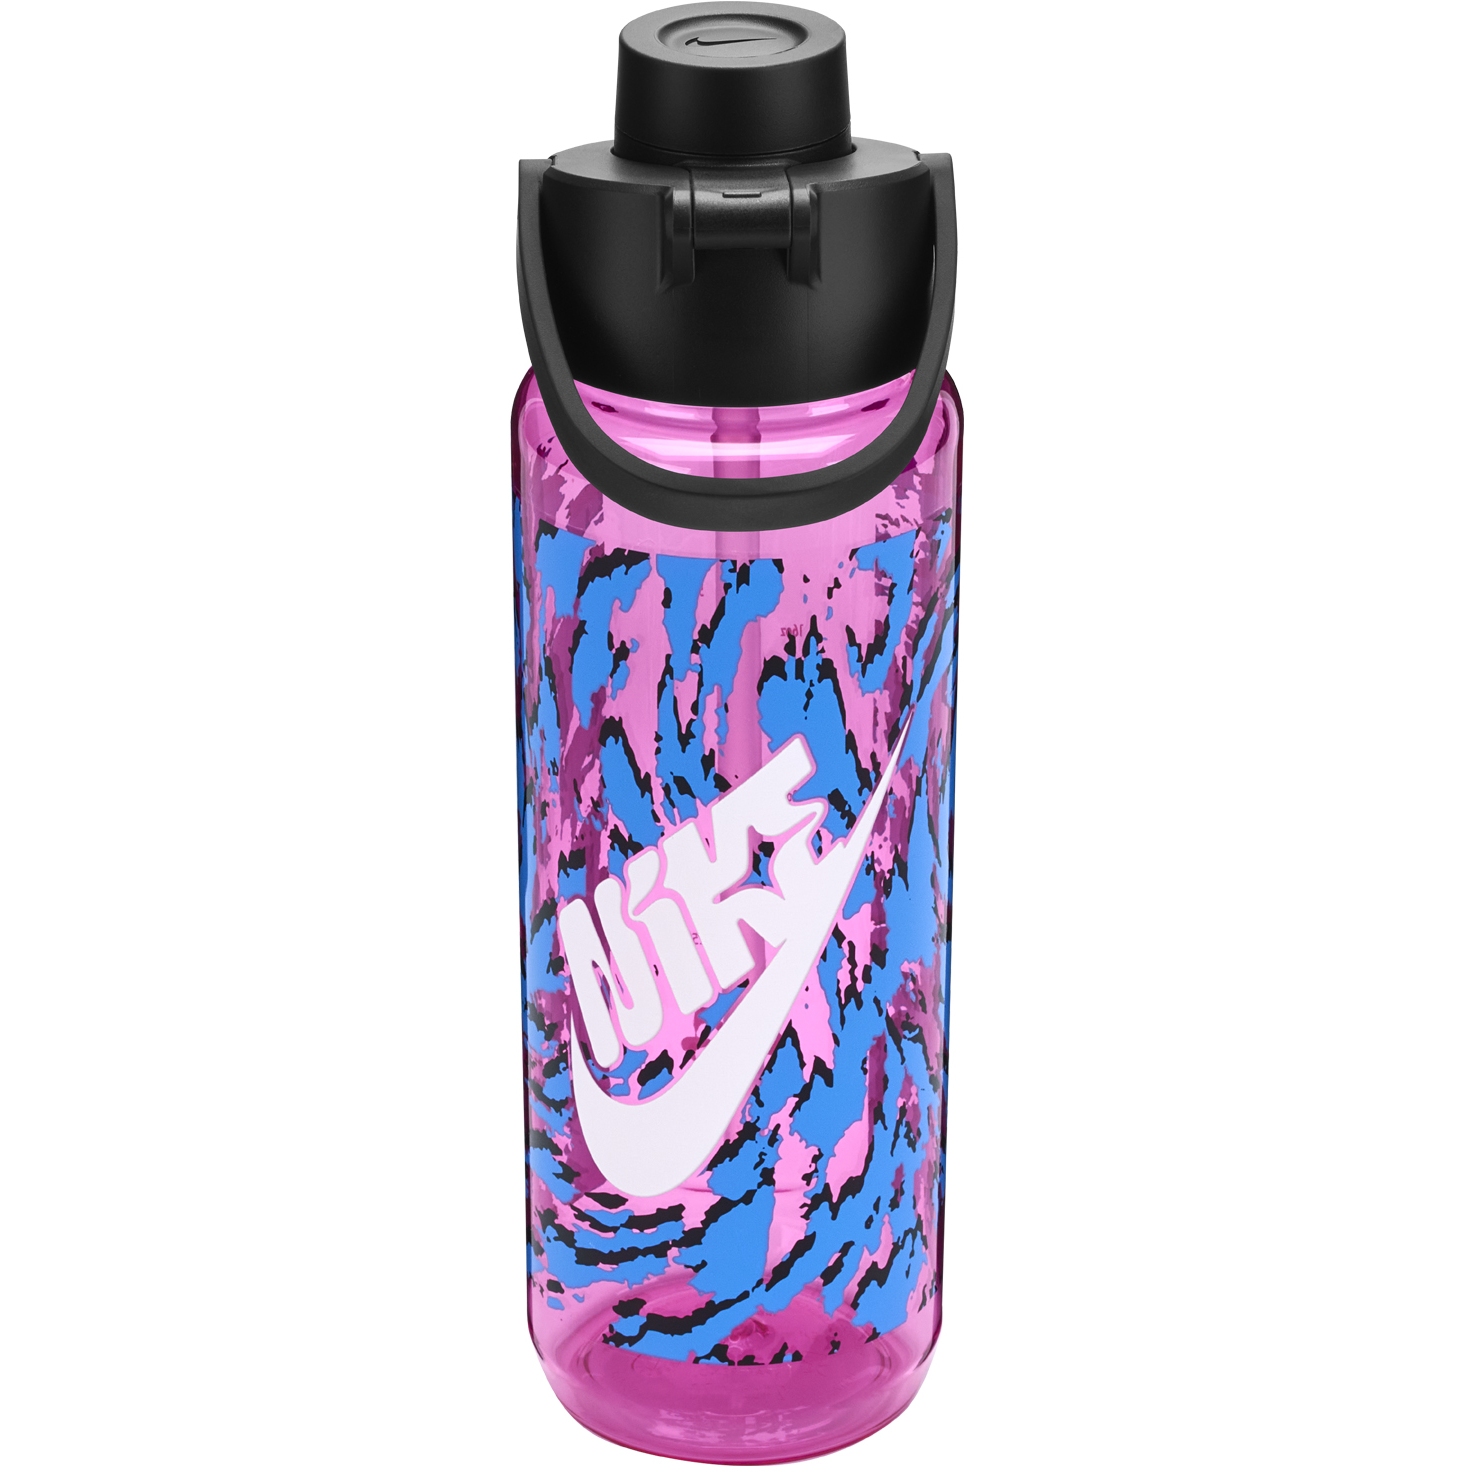 Produktbild von Nike Tritan Renew Recharge Trinkflasche 24 oz / 709ml - playful pink/black/white 660